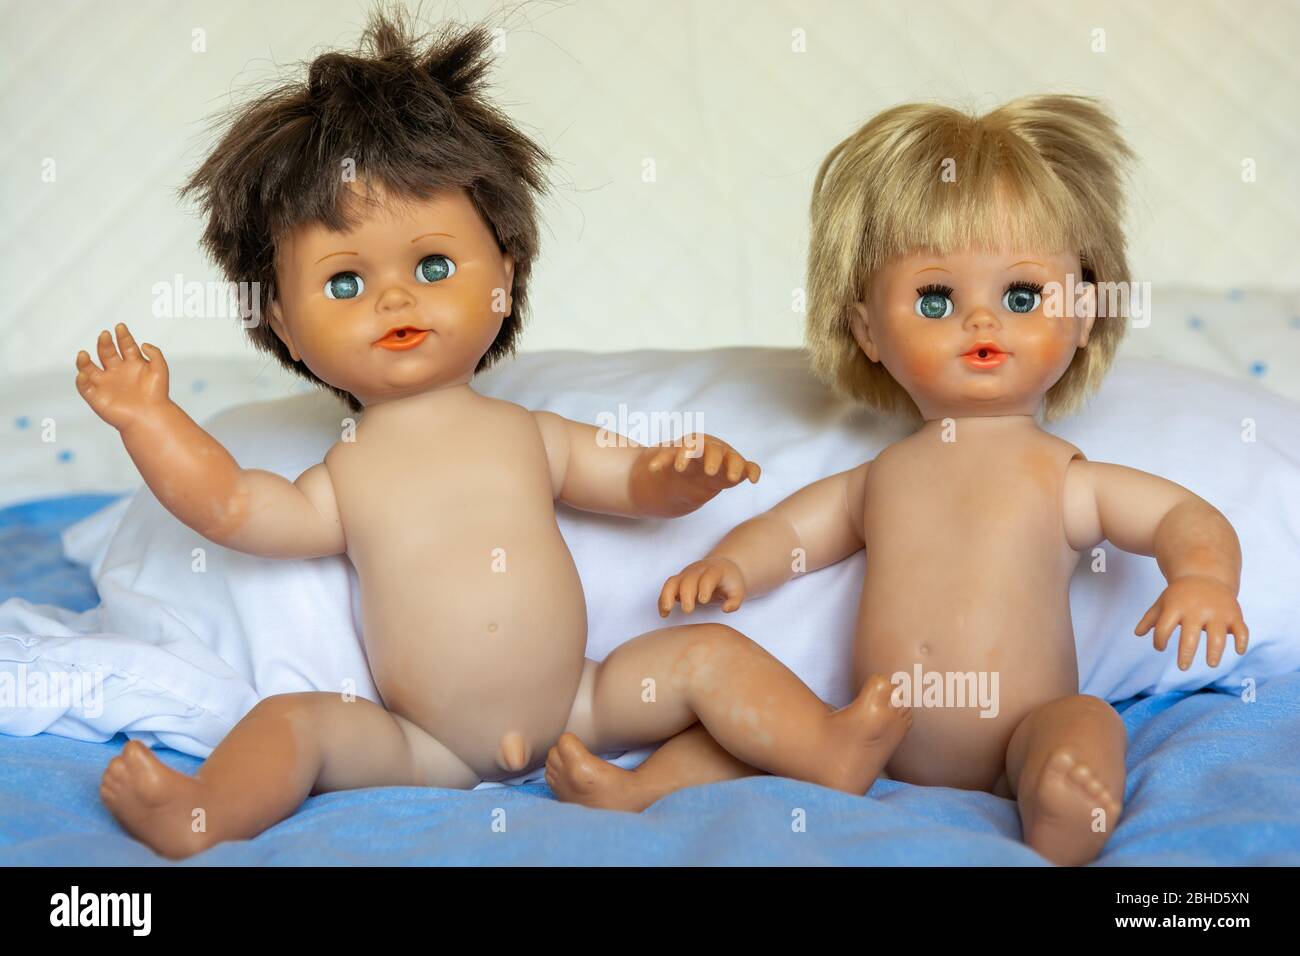 Realistische alte Timmy Tears und winzige Tears Puppen aus den 1990er Jahren Stockfoto